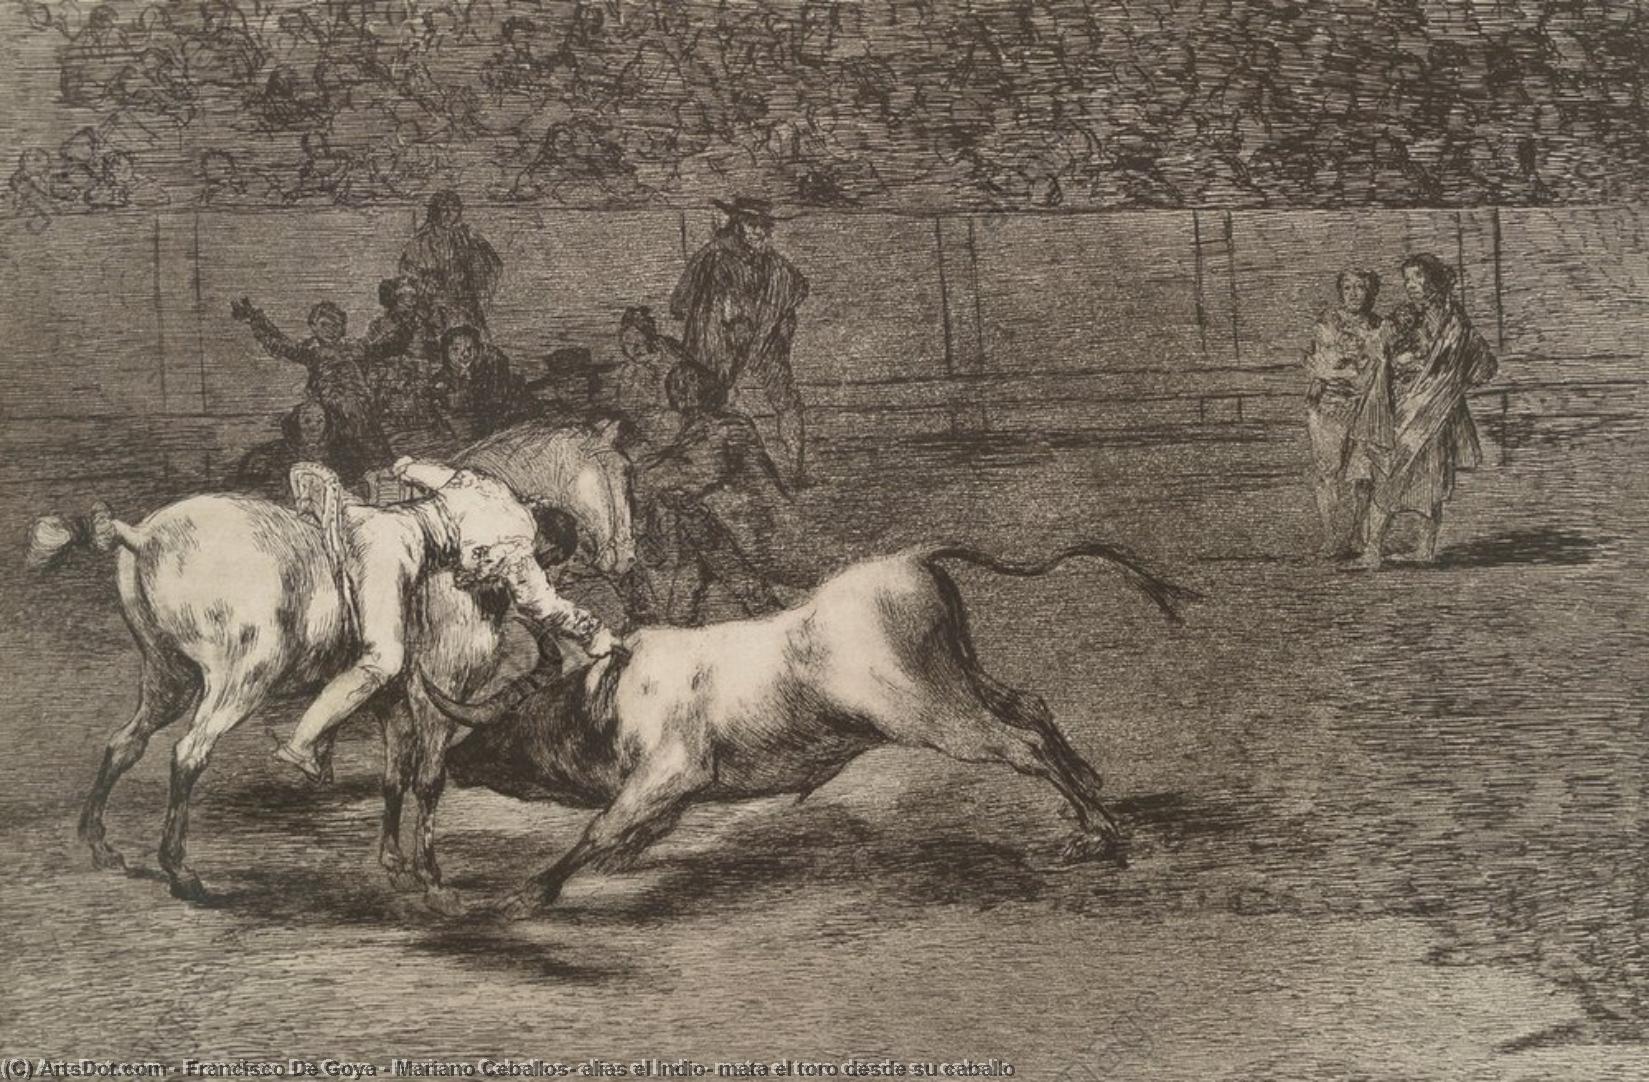 WikiOO.org - Encyclopedia of Fine Arts - Malba, Artwork Francisco De Goya - Mariano Ceballos, alias el Indio, mata el toro desde su caballo